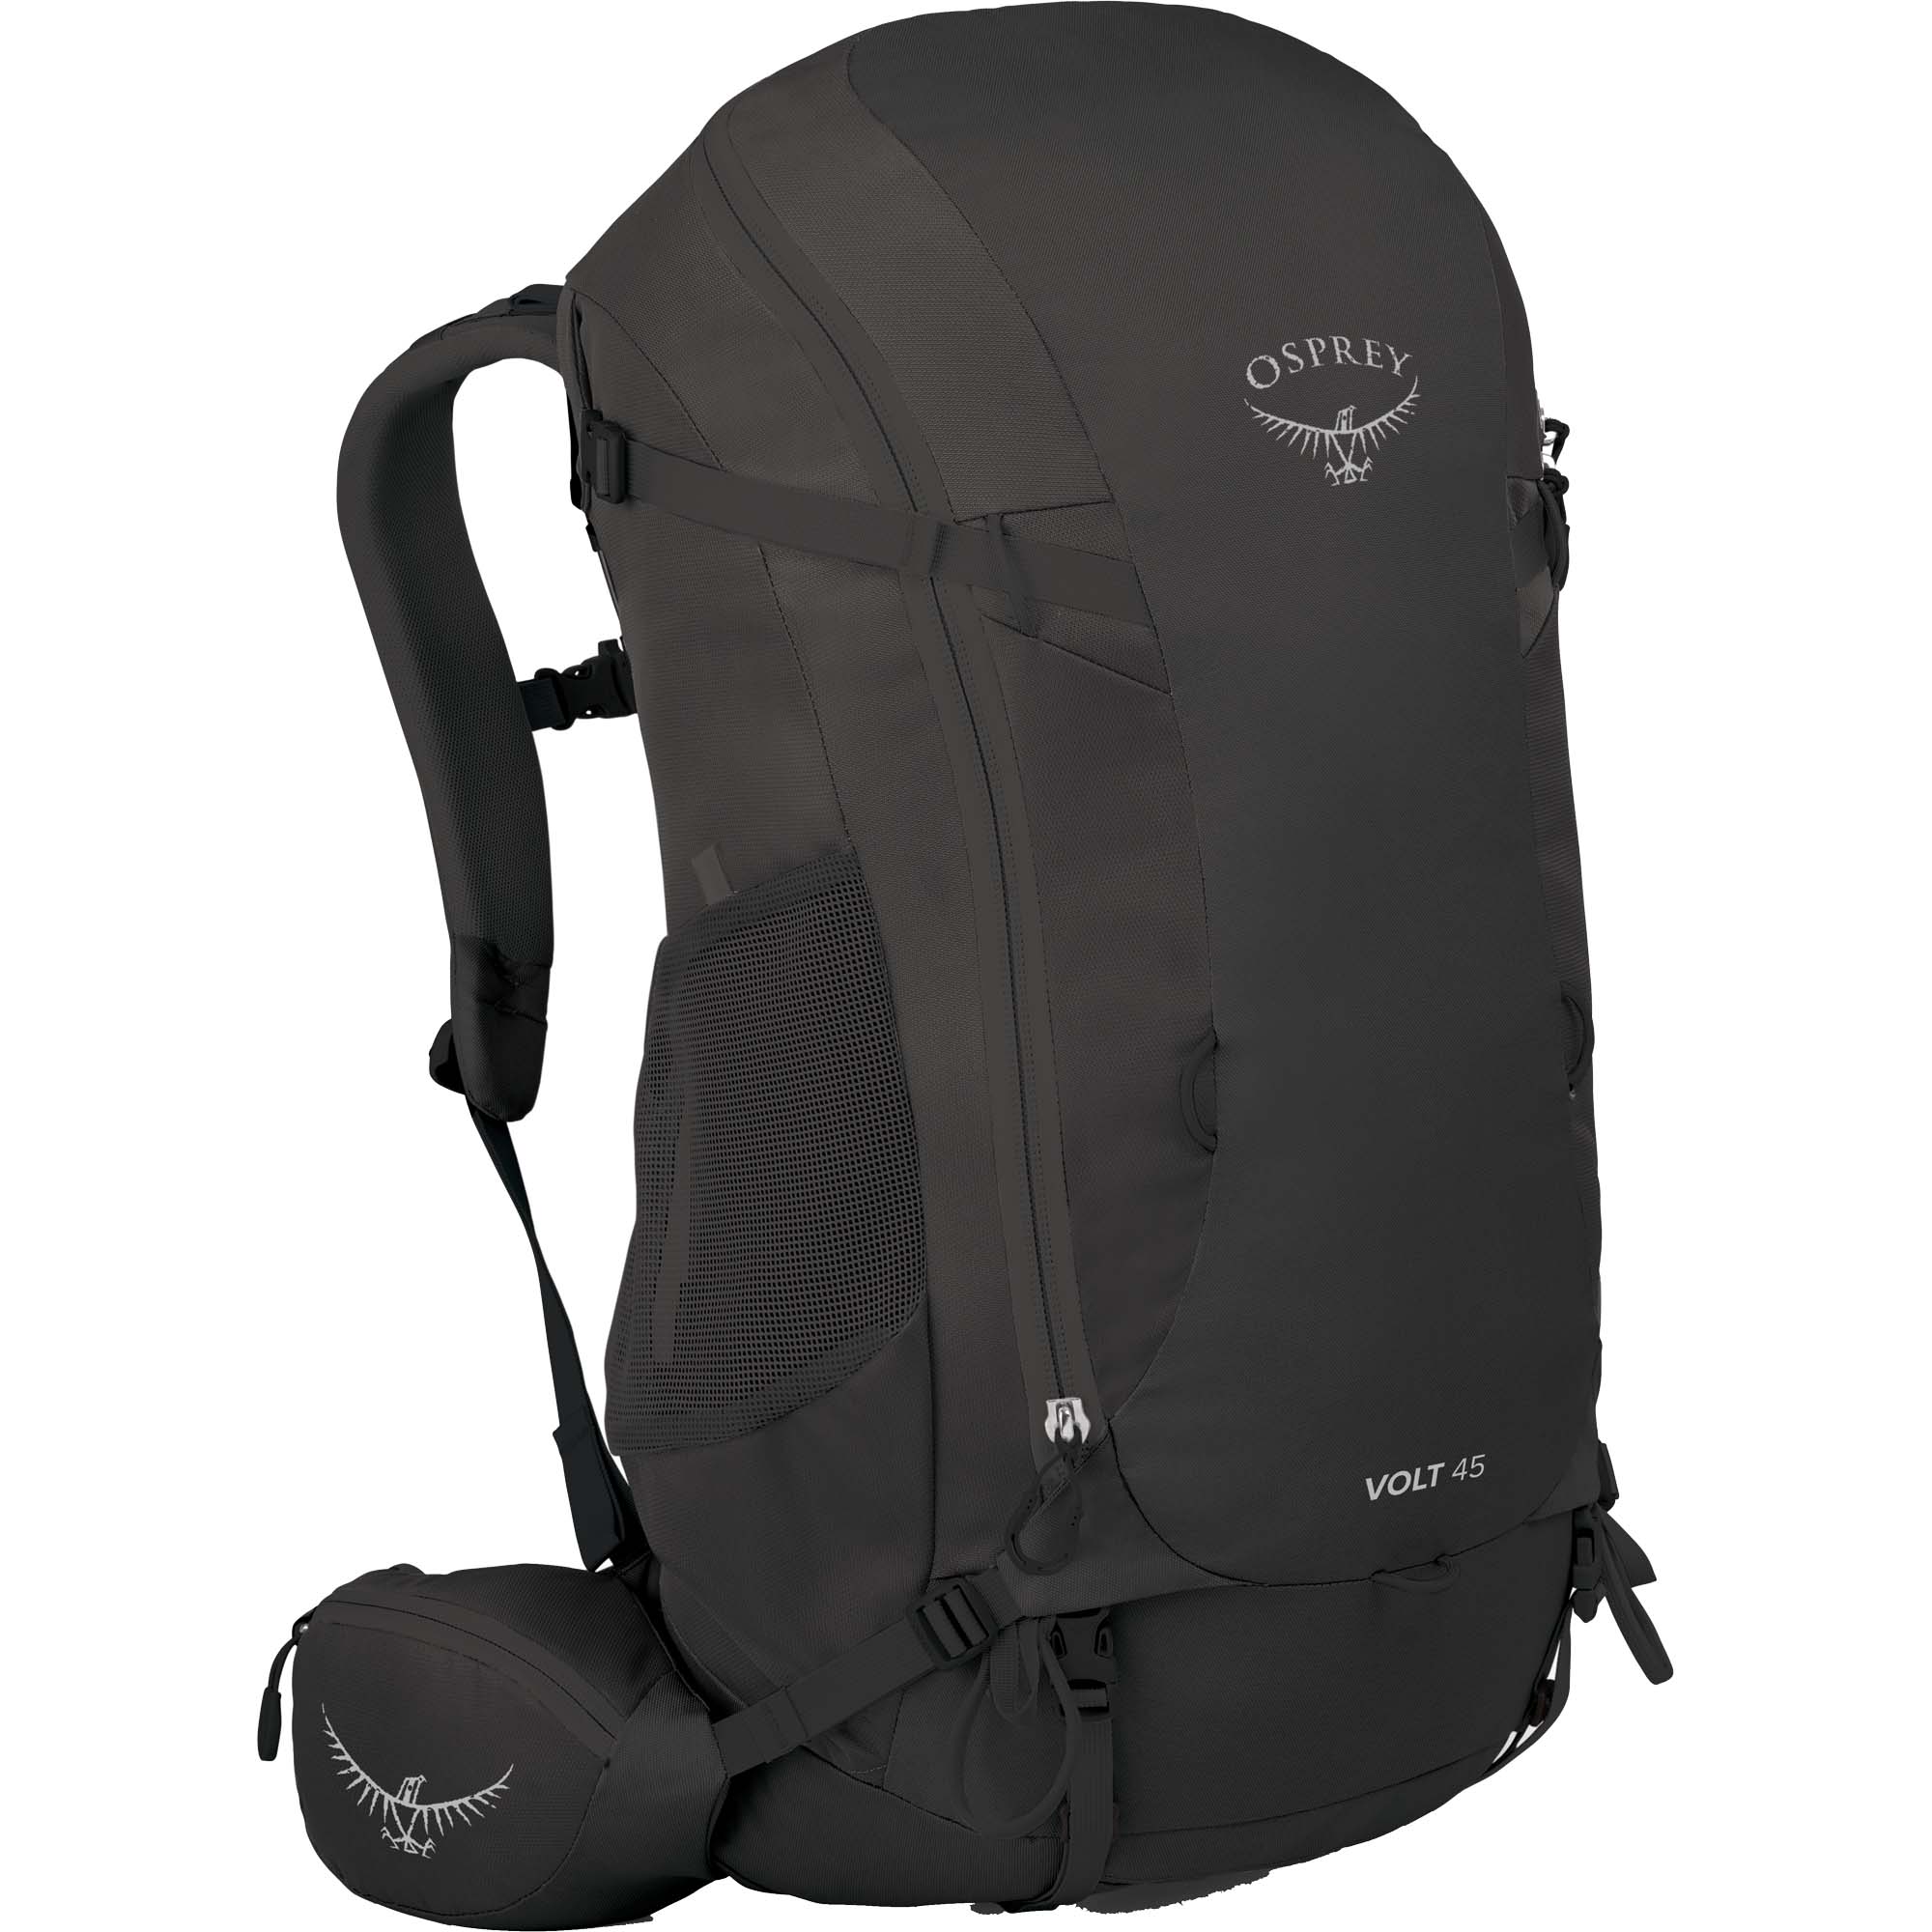 Osprey Volt 45 Fast & Light Backpacking Pack